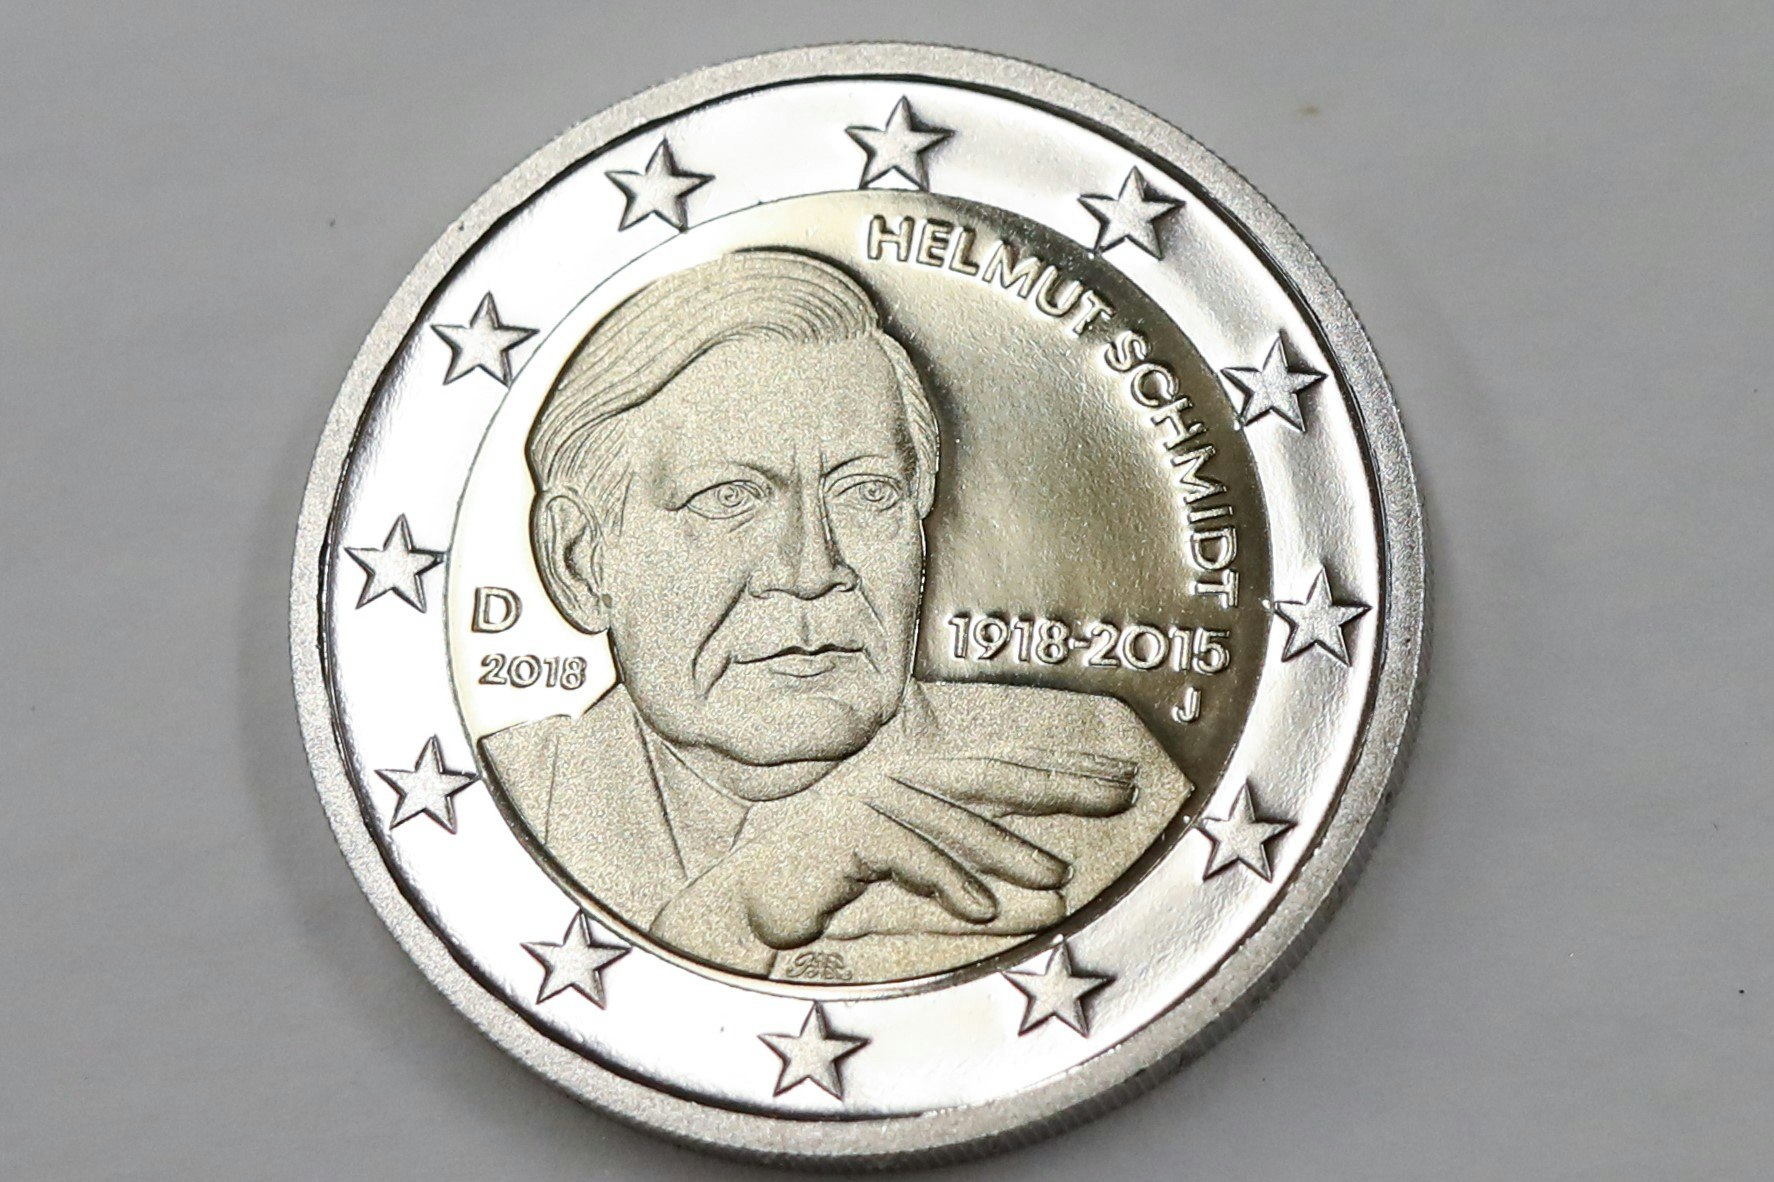 Helmut Schmidt: Alt-Kanzler auf 2-Euro-Münze – doch die Zigarette fehlt